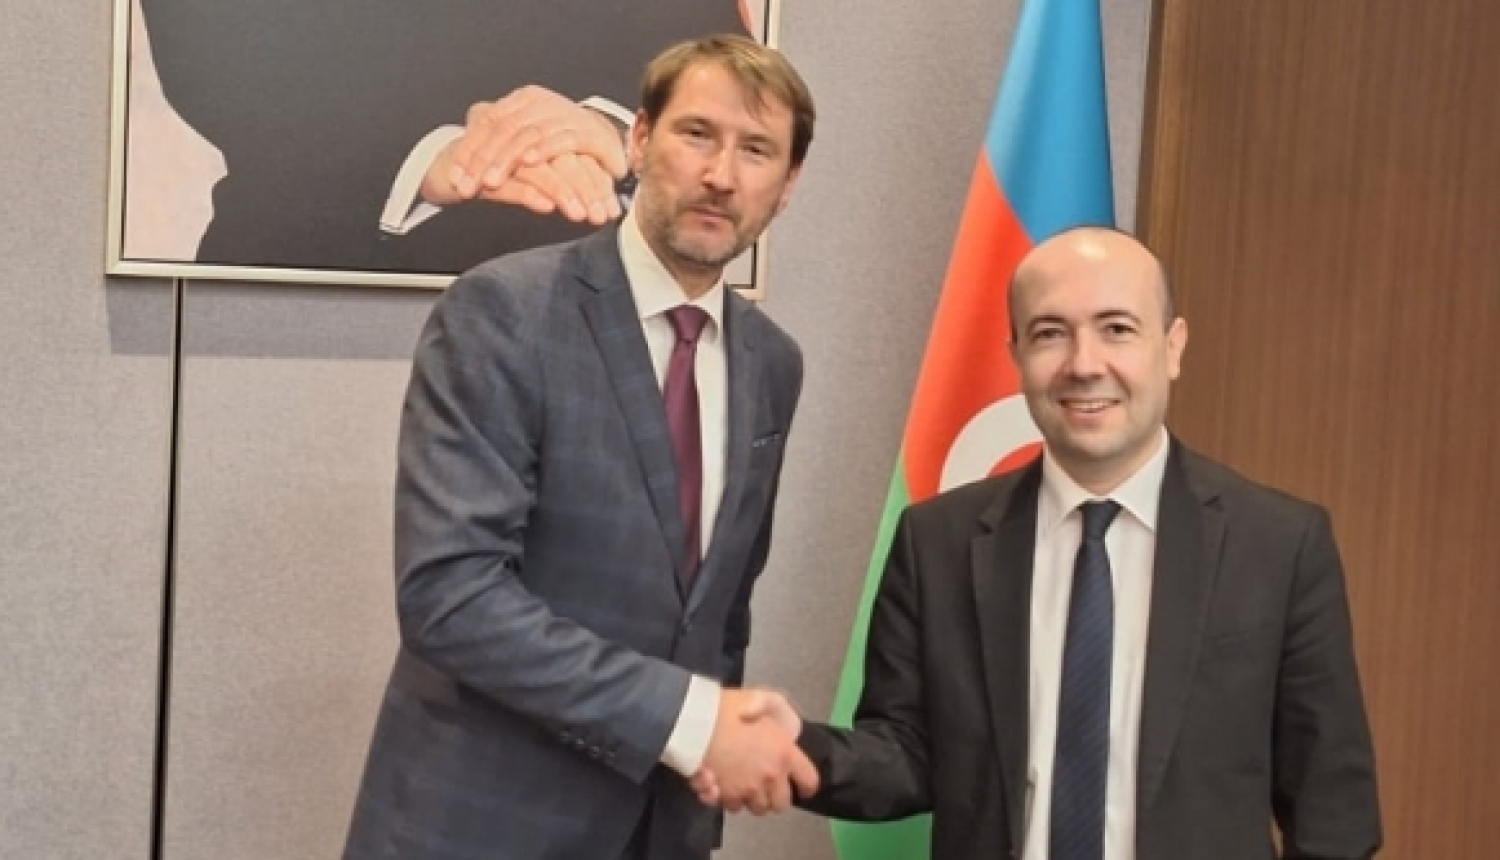 Ārlietu ministrijas politiskais direktors Andžejs Viļumsons tiekas ar Azerbaidžānas ārlietu ministra vietnieku Farizs Rzajevs (Fariz Rzayev)